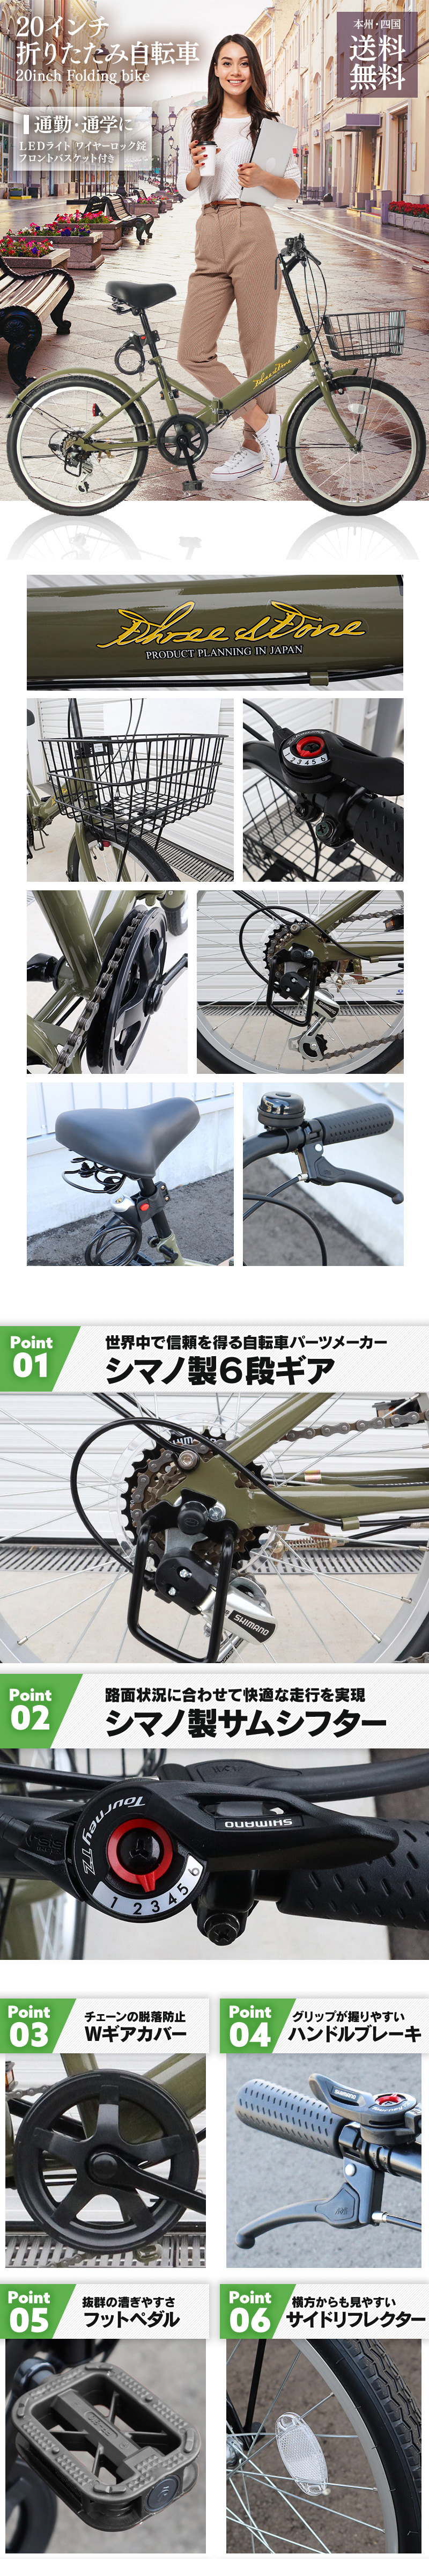 折りたたみ自転車 20インチ AJ-08N シマノ 6段変速 カーキ 【本州